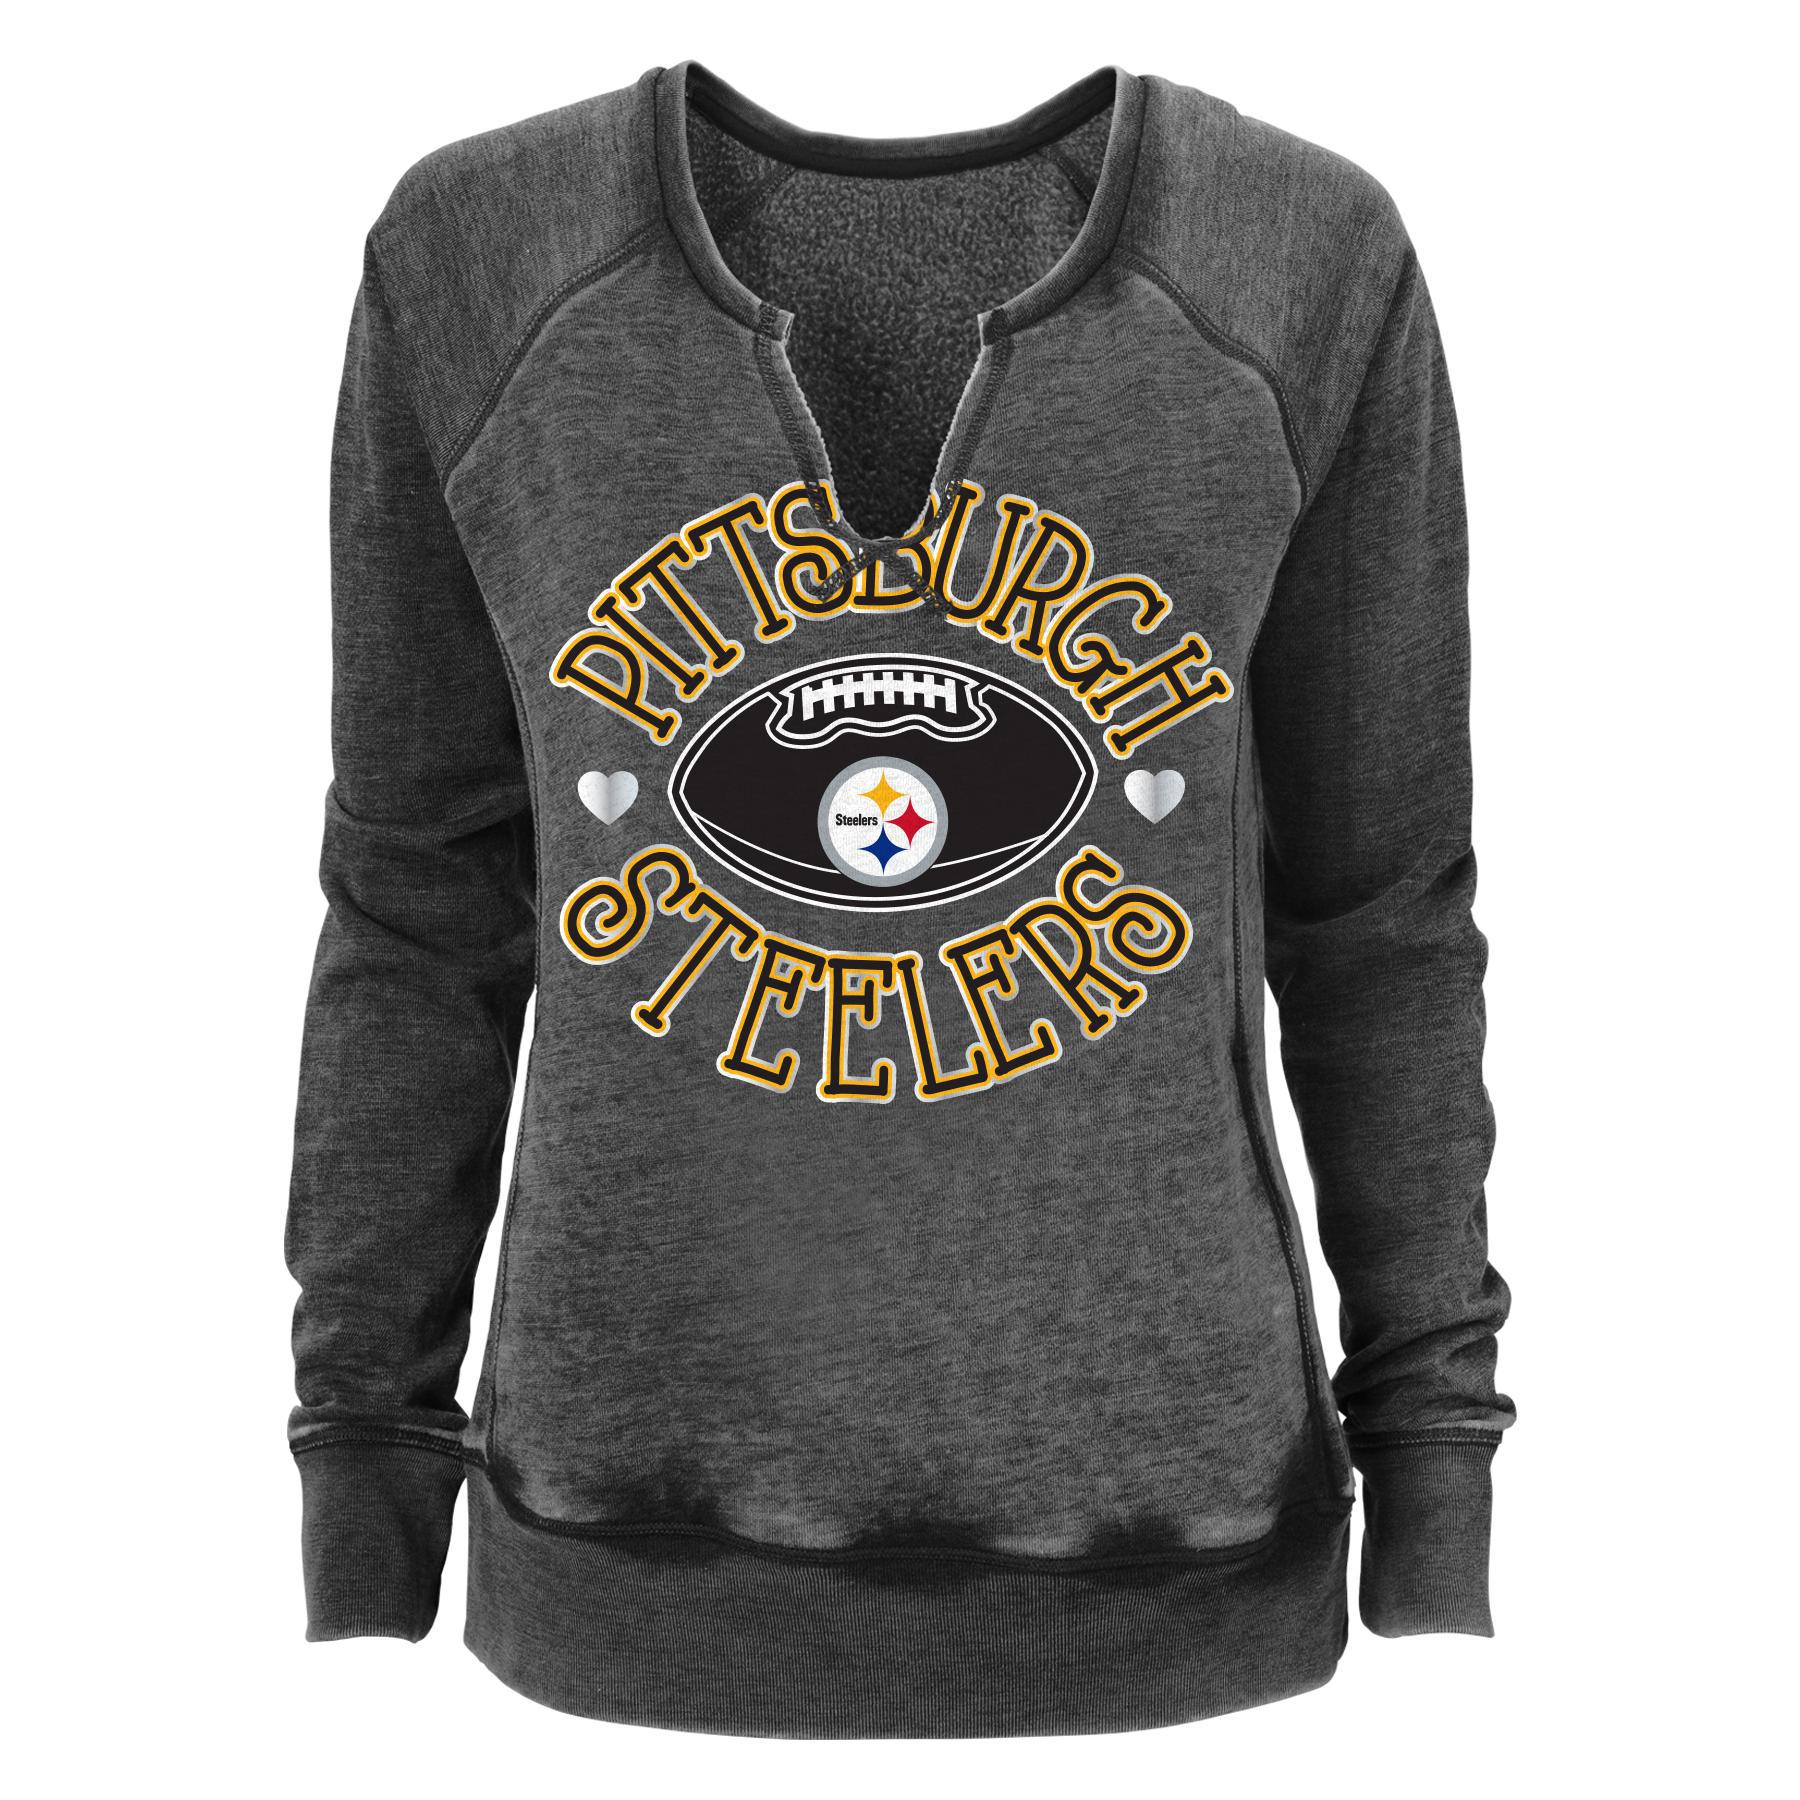 NFL Juniors' Fleece Top - Pittsburgh Steelers